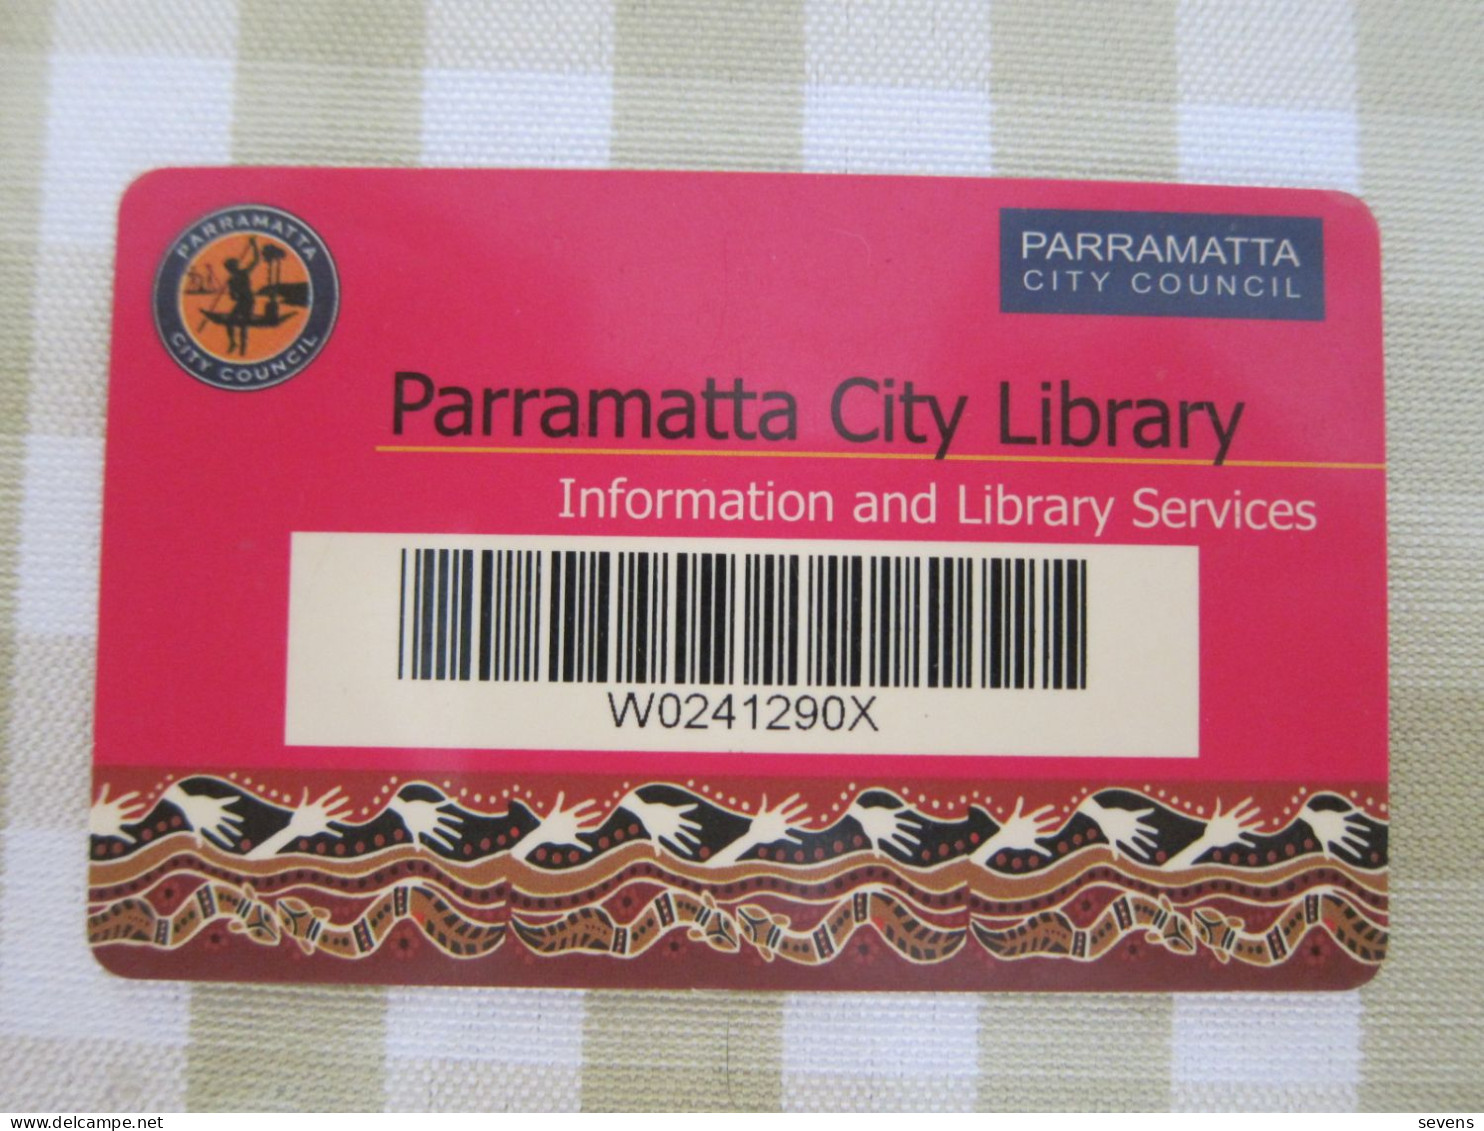 Parramatta(Sydney) City Library Card - Sin Clasificación